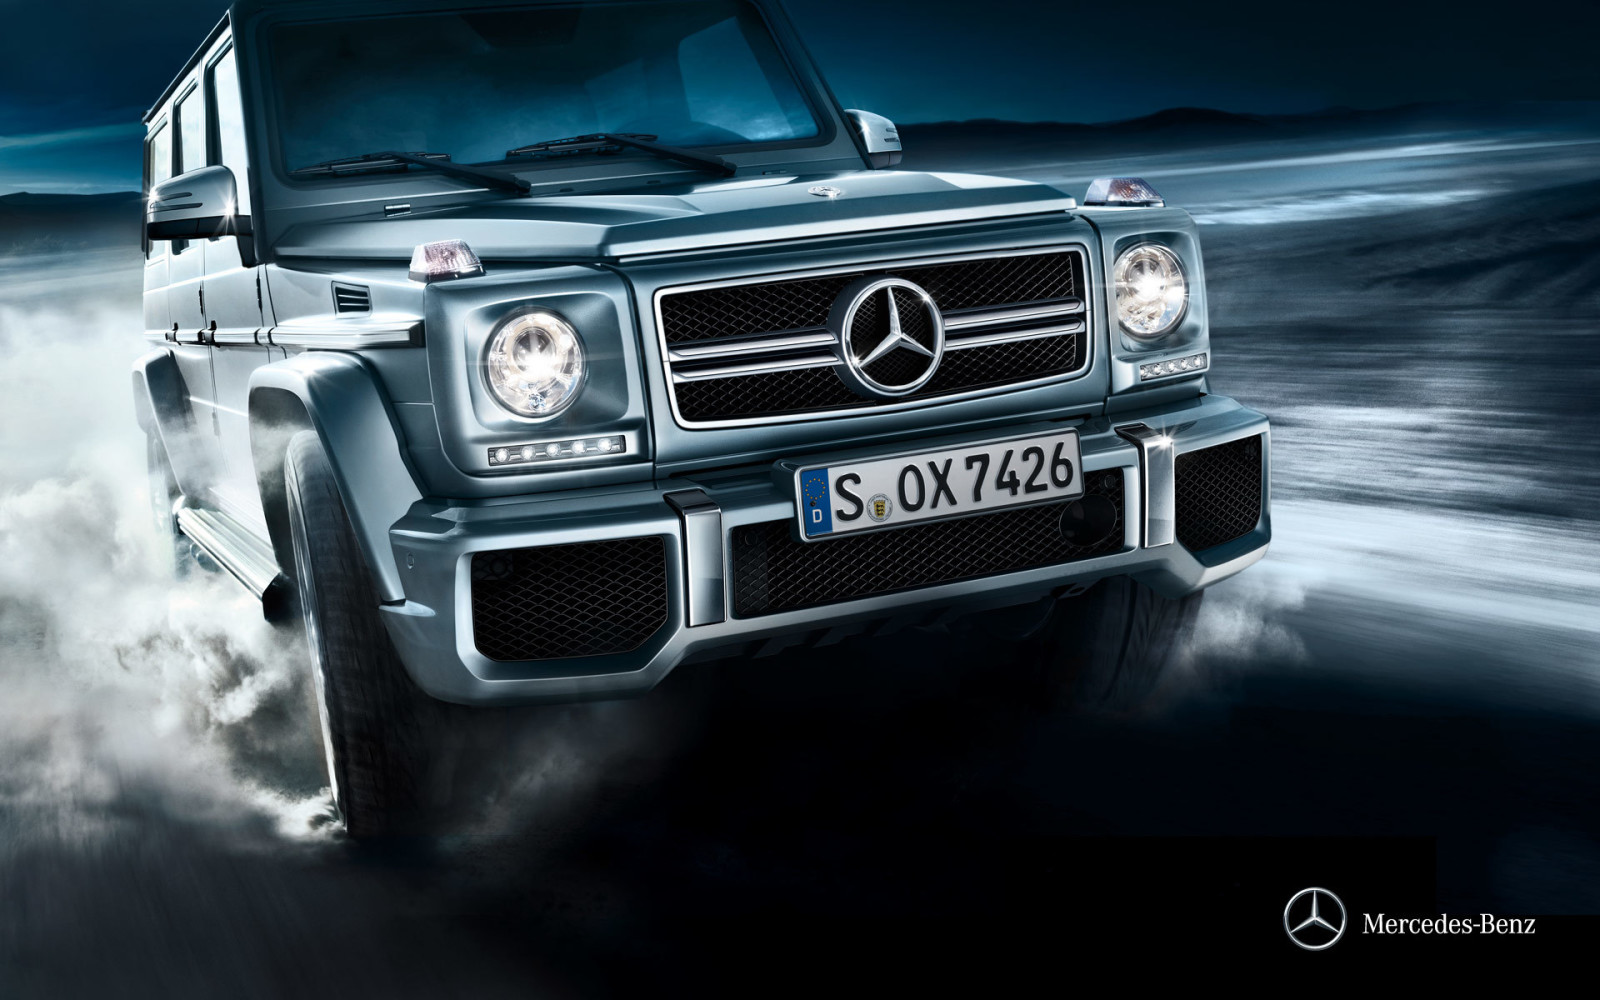 Mercedes-Benz, Mercedes, G-Class, Gelandewagen, W463, 2012, Stationwagon